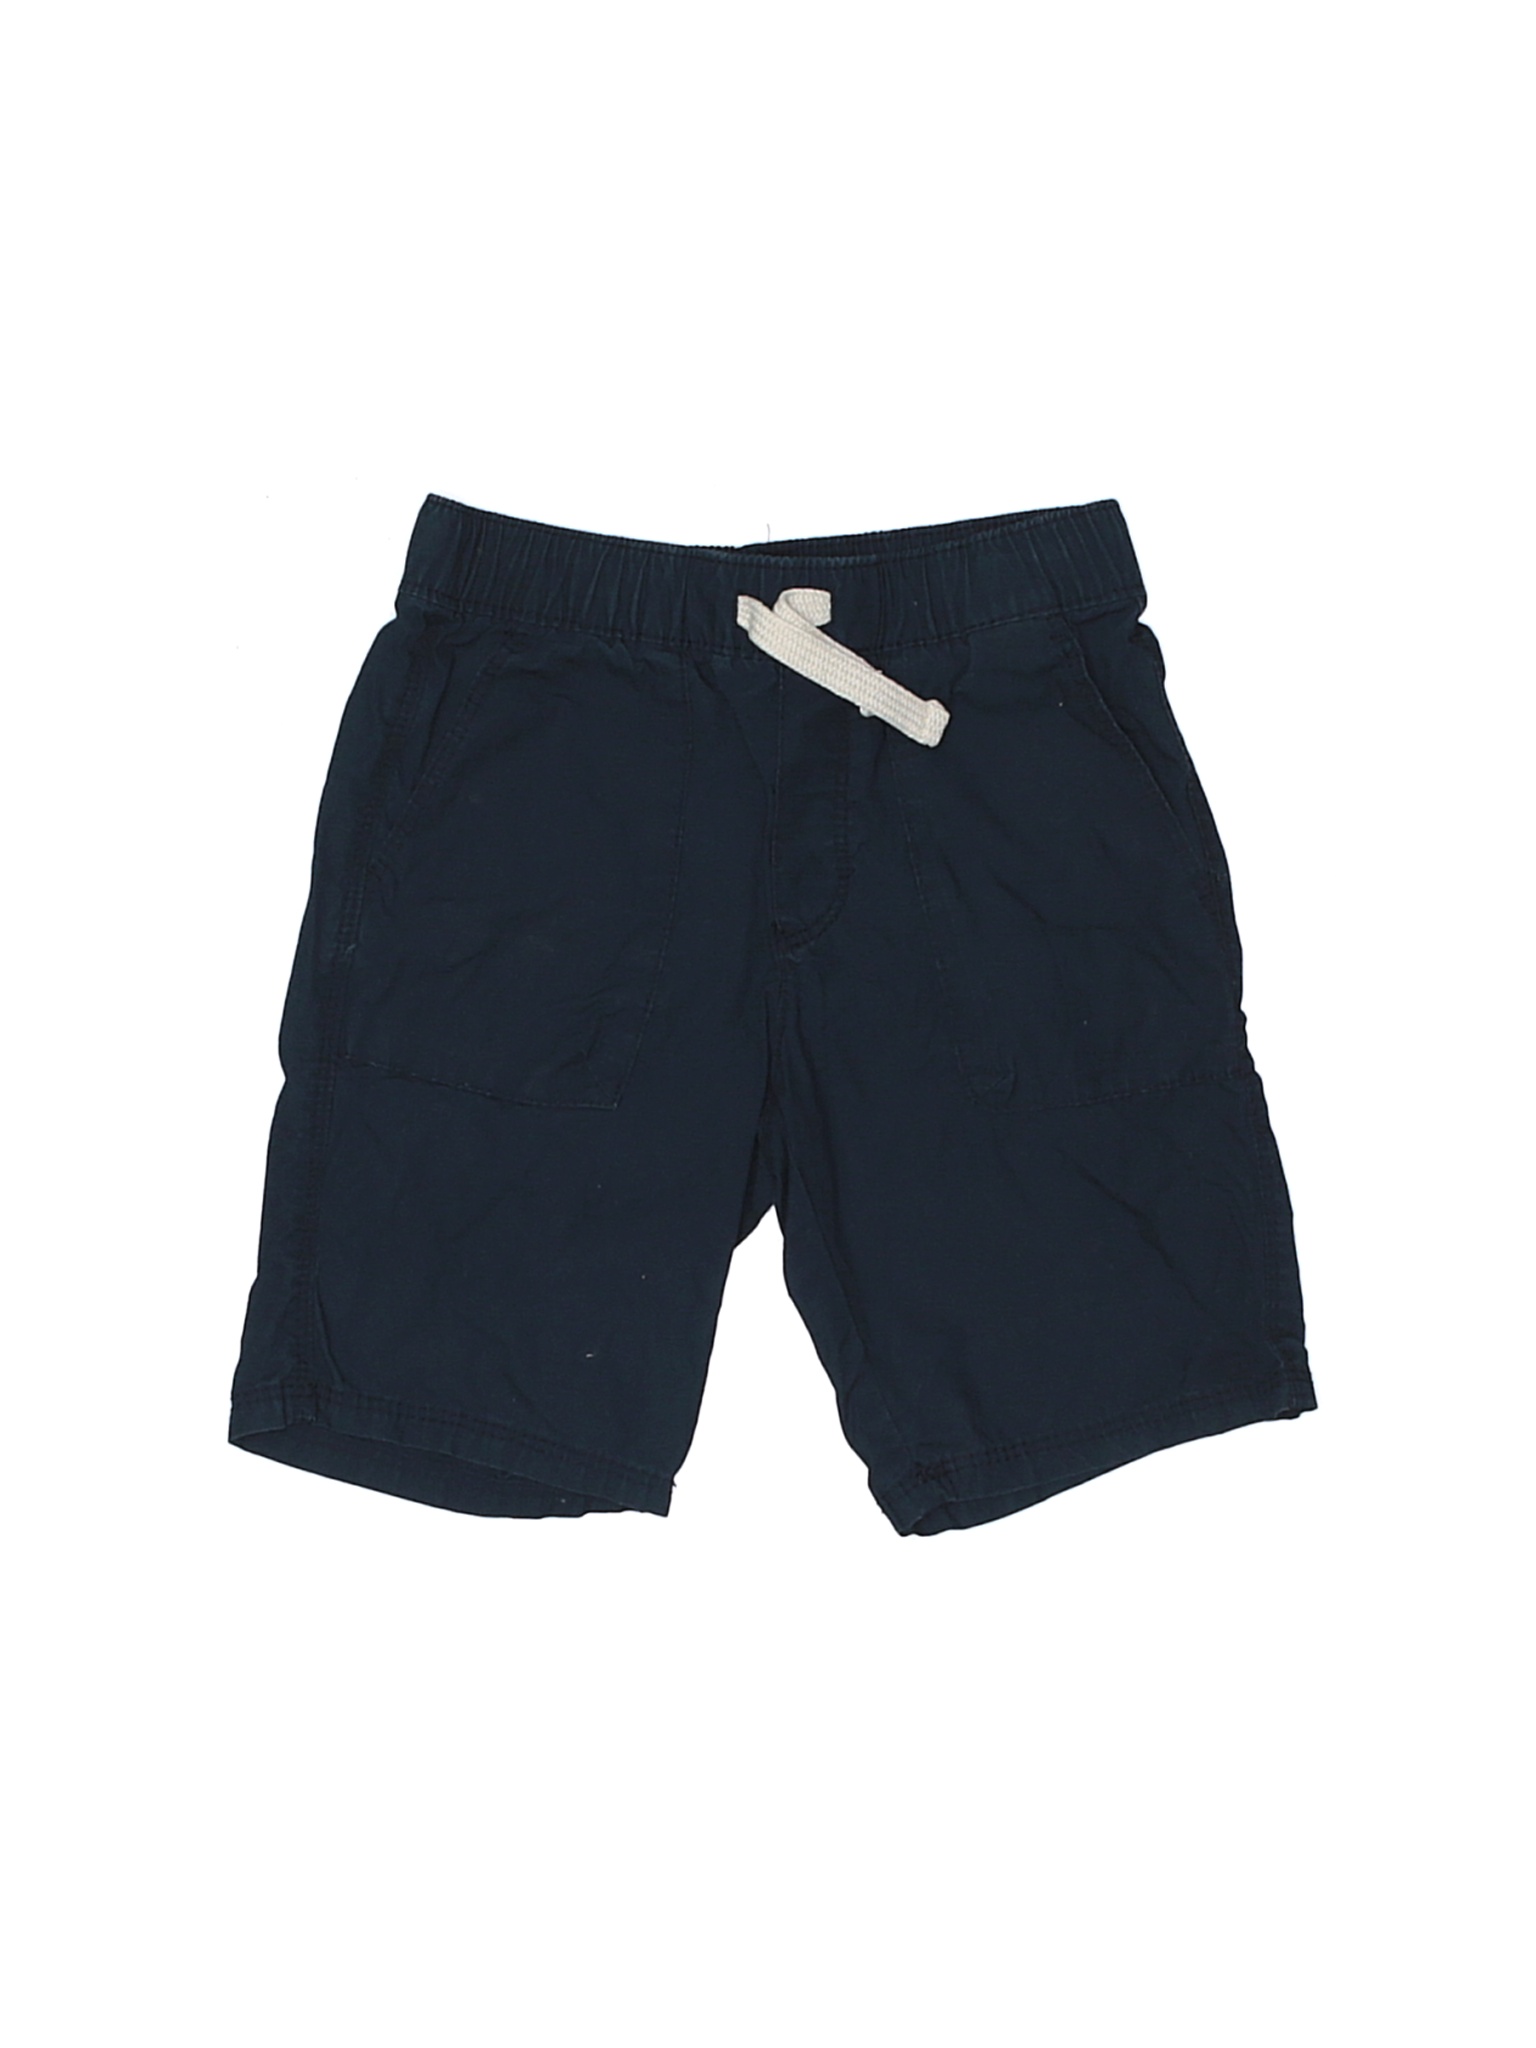 Old Navy Boys Black Shorts 5T | eBay